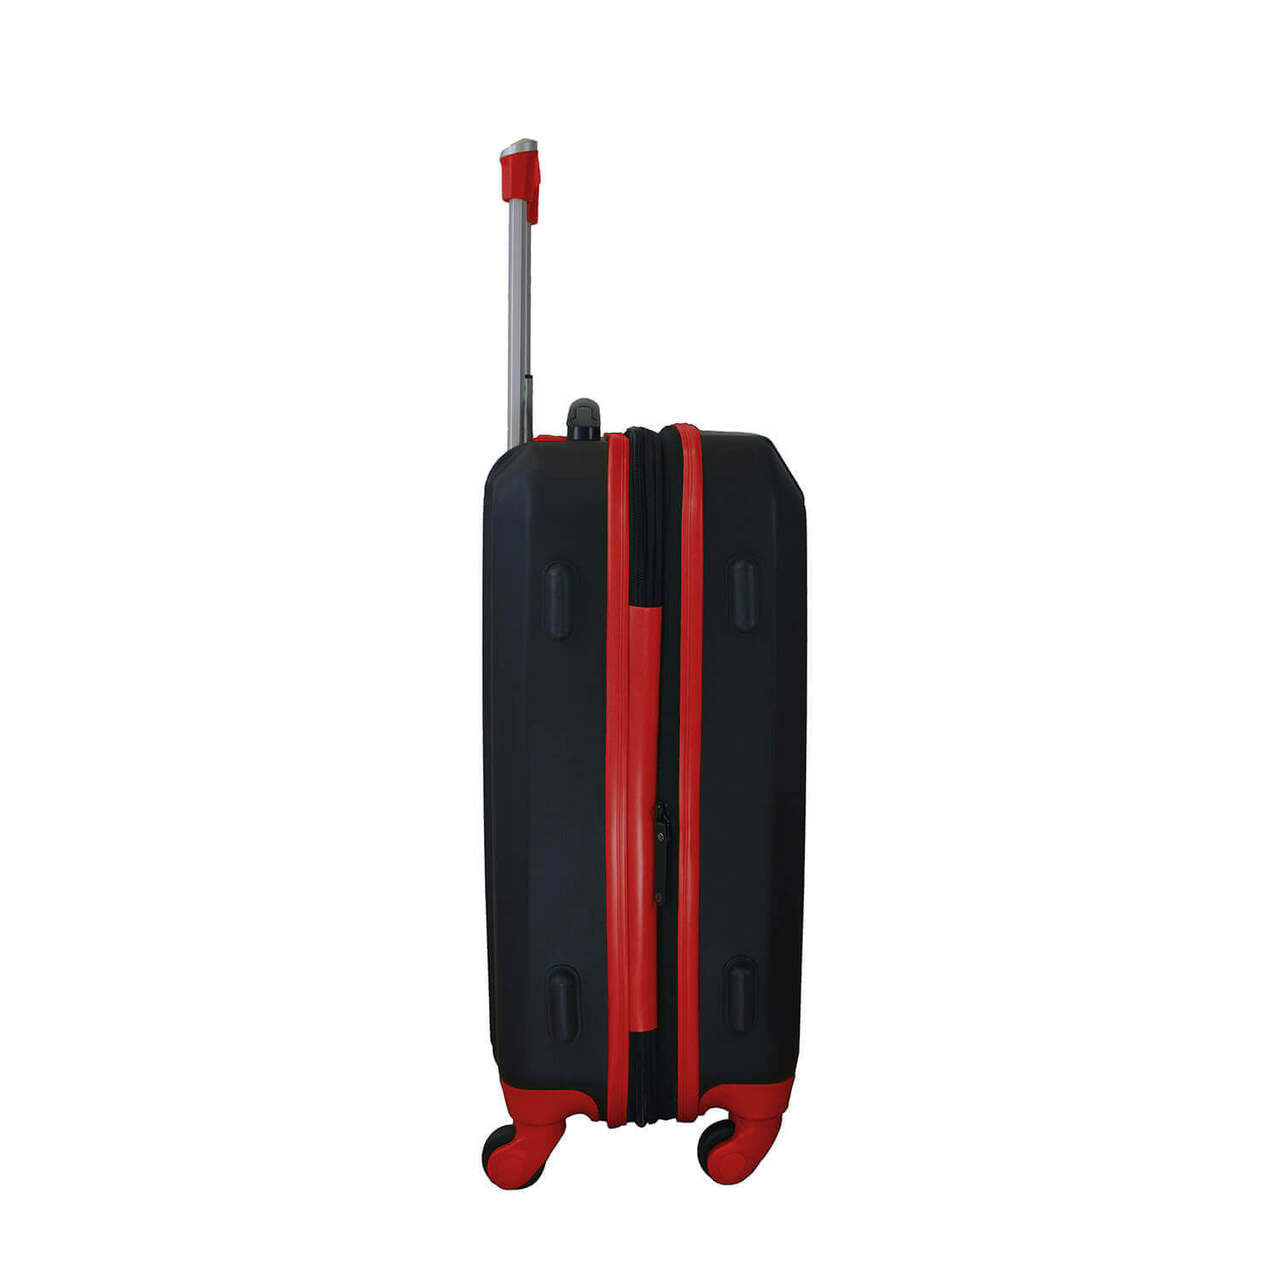 Hawks Carry On Spinner Luggage | Atlanta Hawks Hardcase Two-Tone Luggage Carry-on Spinner in Red